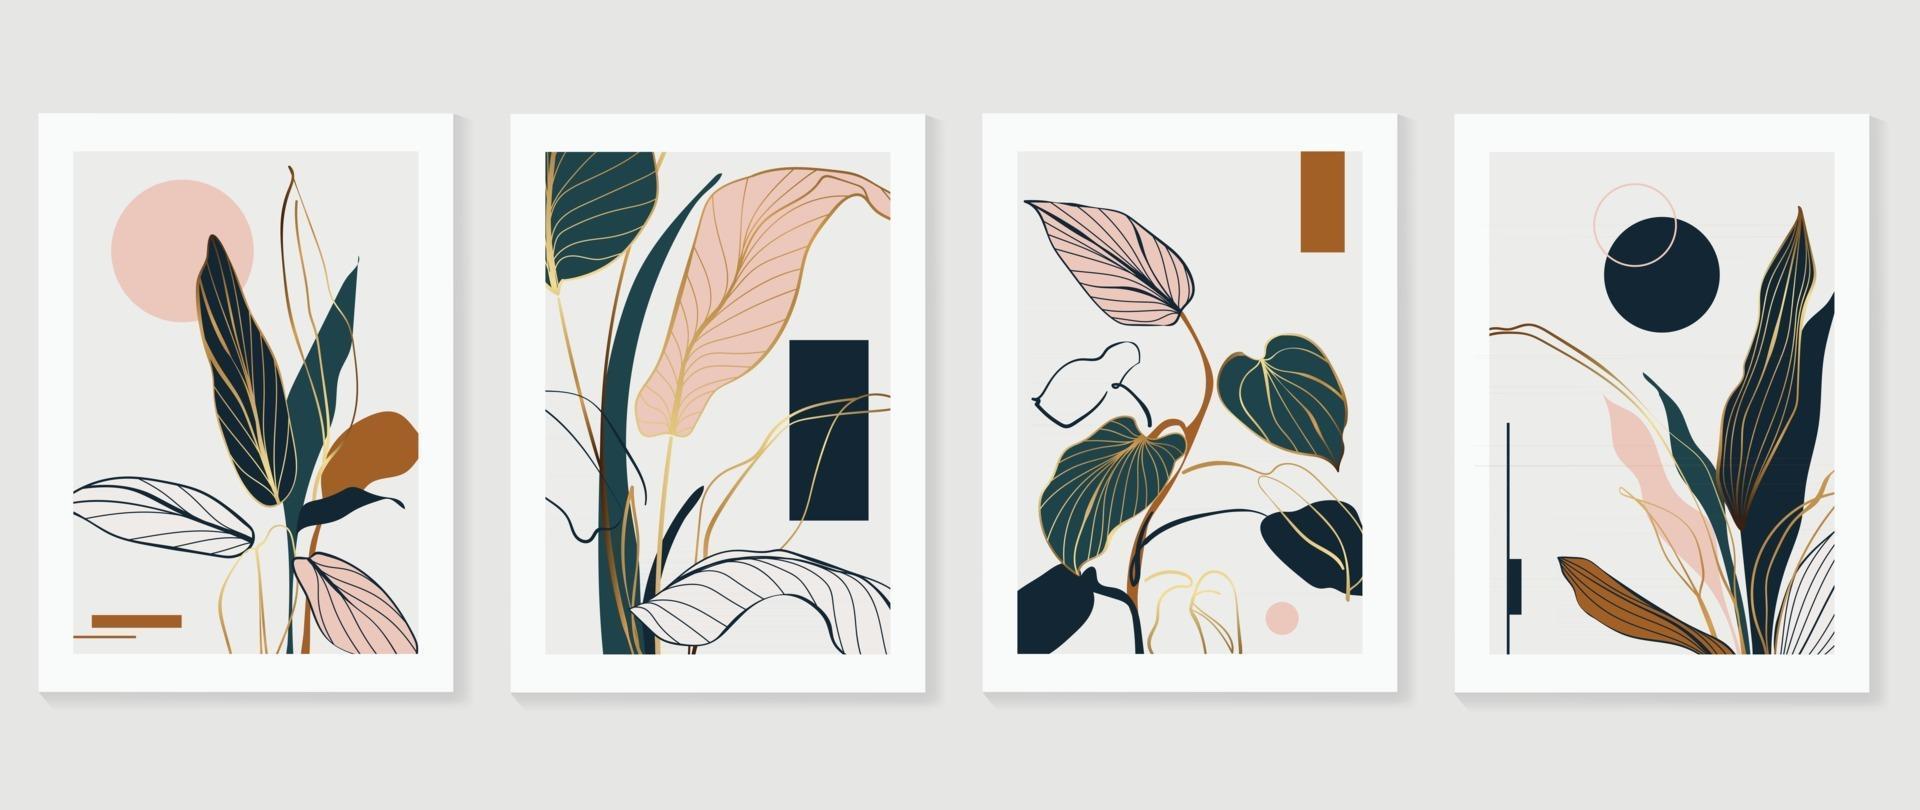 abstrakt konst tropiska blad bakgrund vektor. väggkonstdesign med akvarellkonststruktur från blommor och palmblad vektor